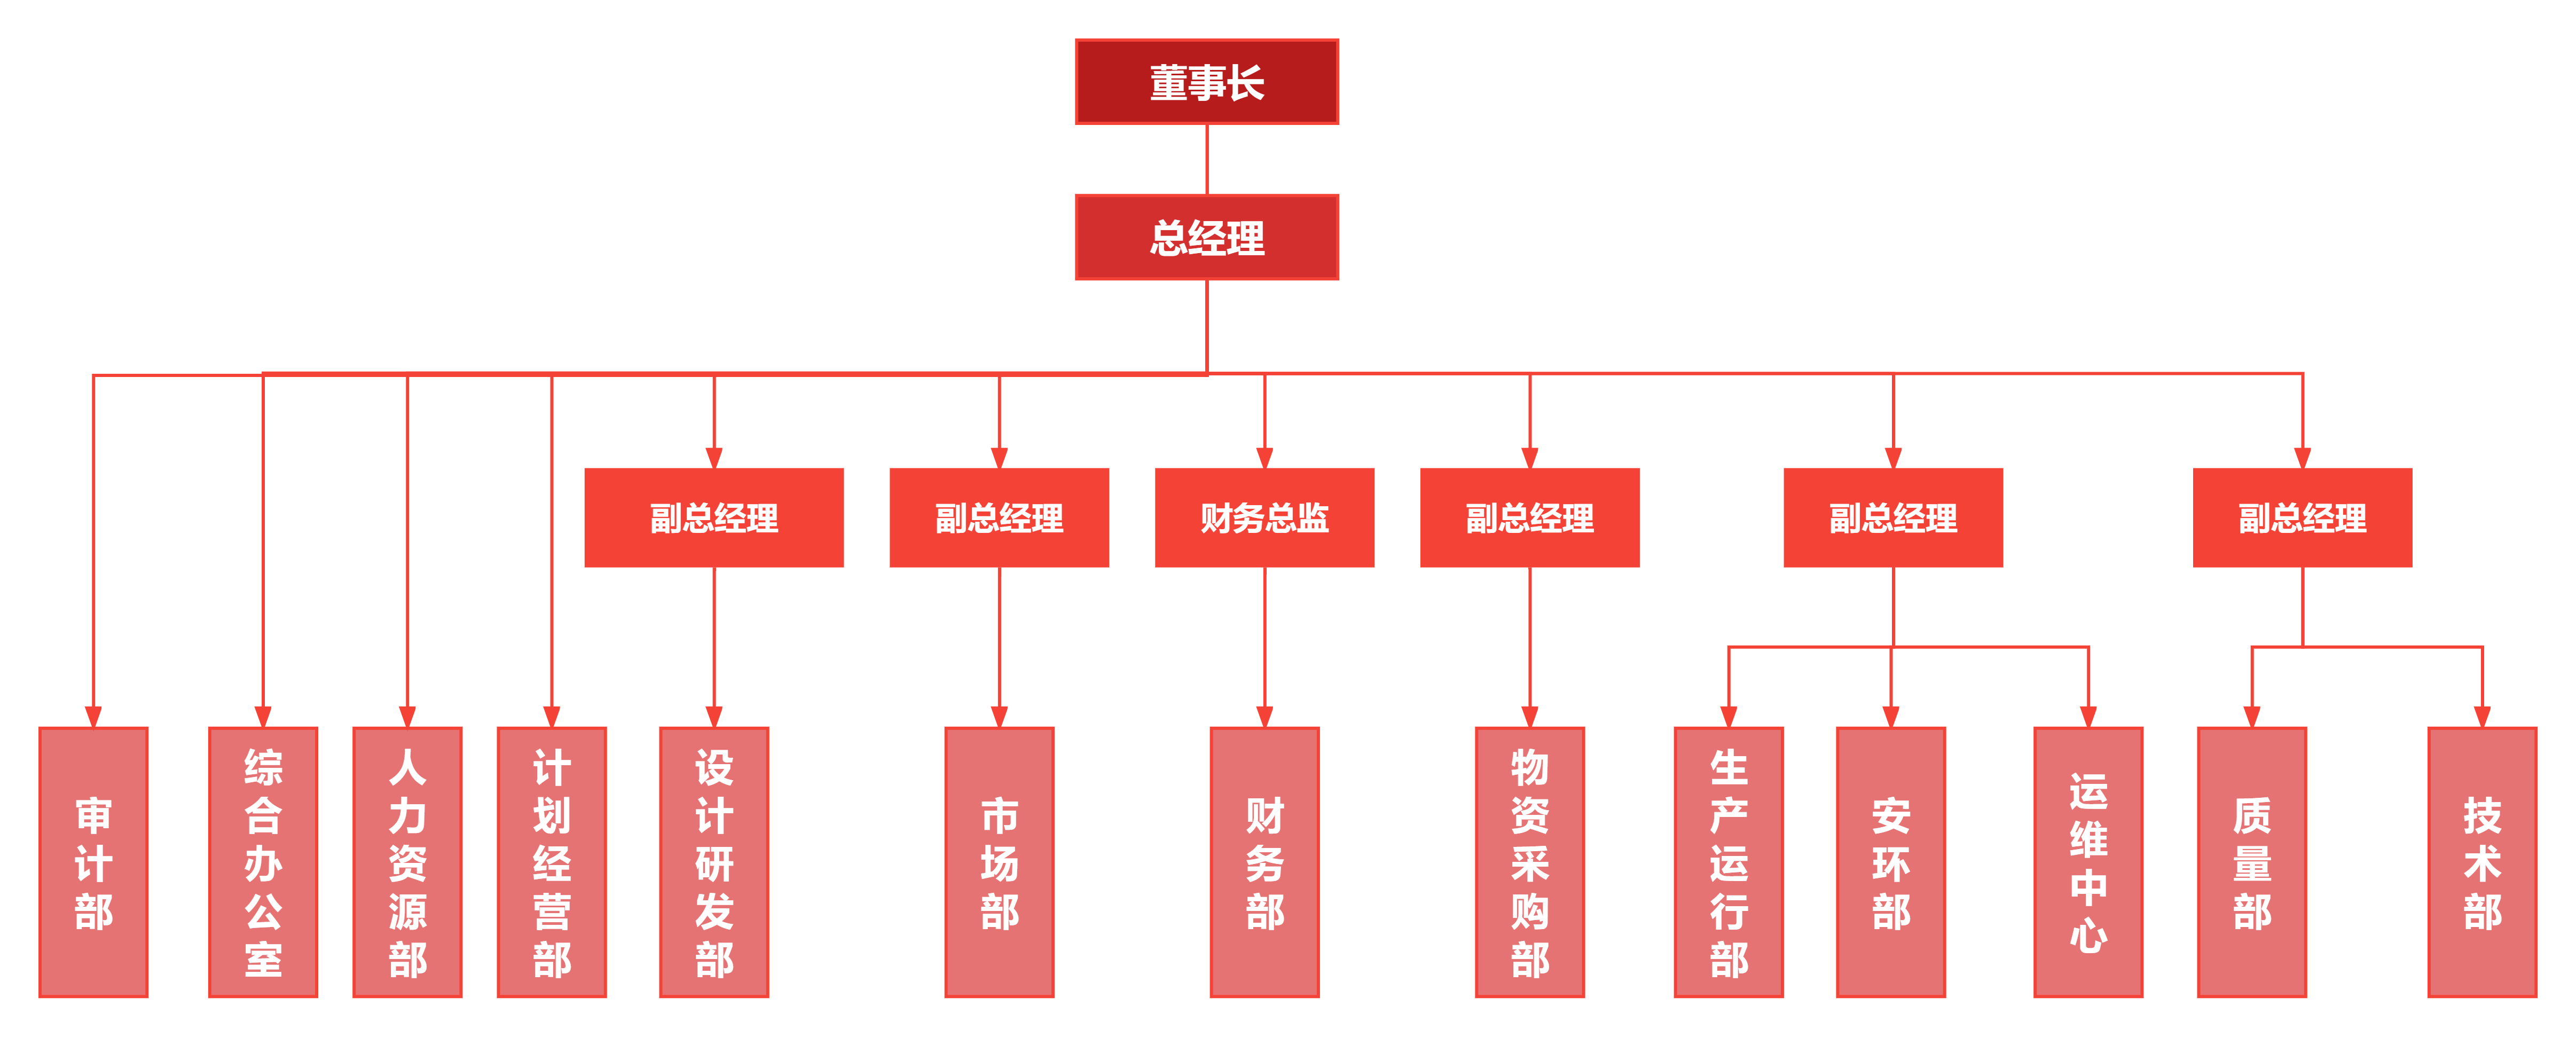 组织架构图2.png